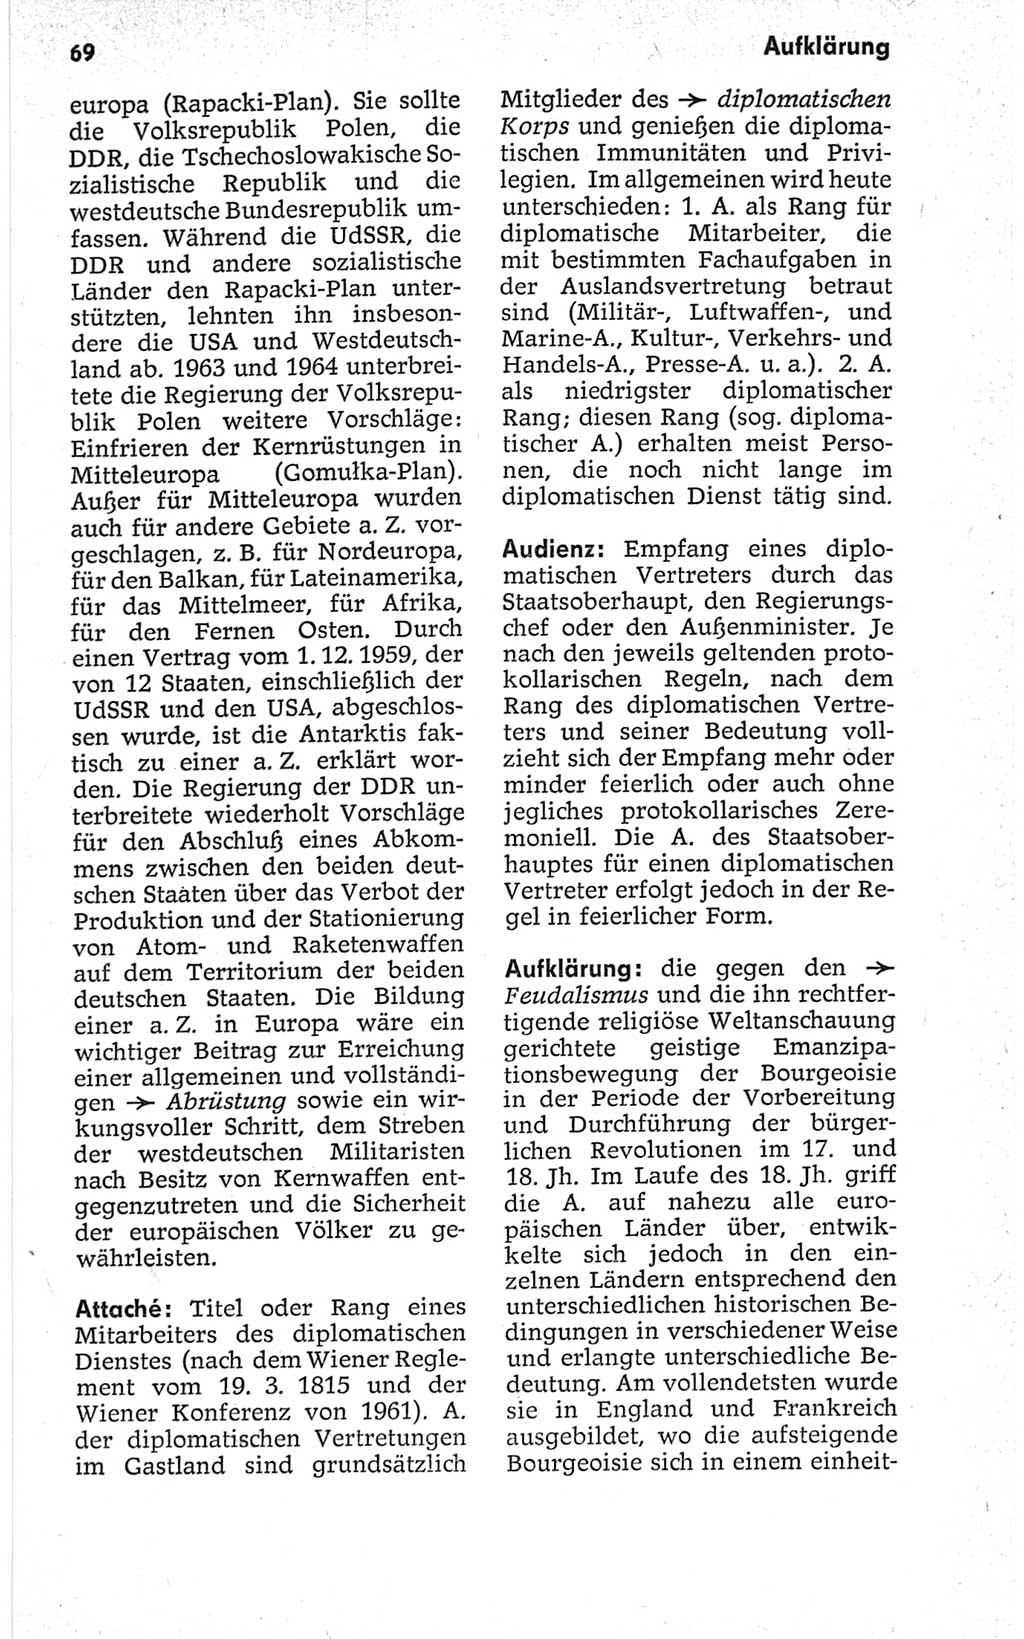 Kleines politisches Wörterbuch [Deutsche Demokratische Republik (DDR)] 1967, Seite 69 (Kl. pol. Wb. DDR 1967, S. 69)